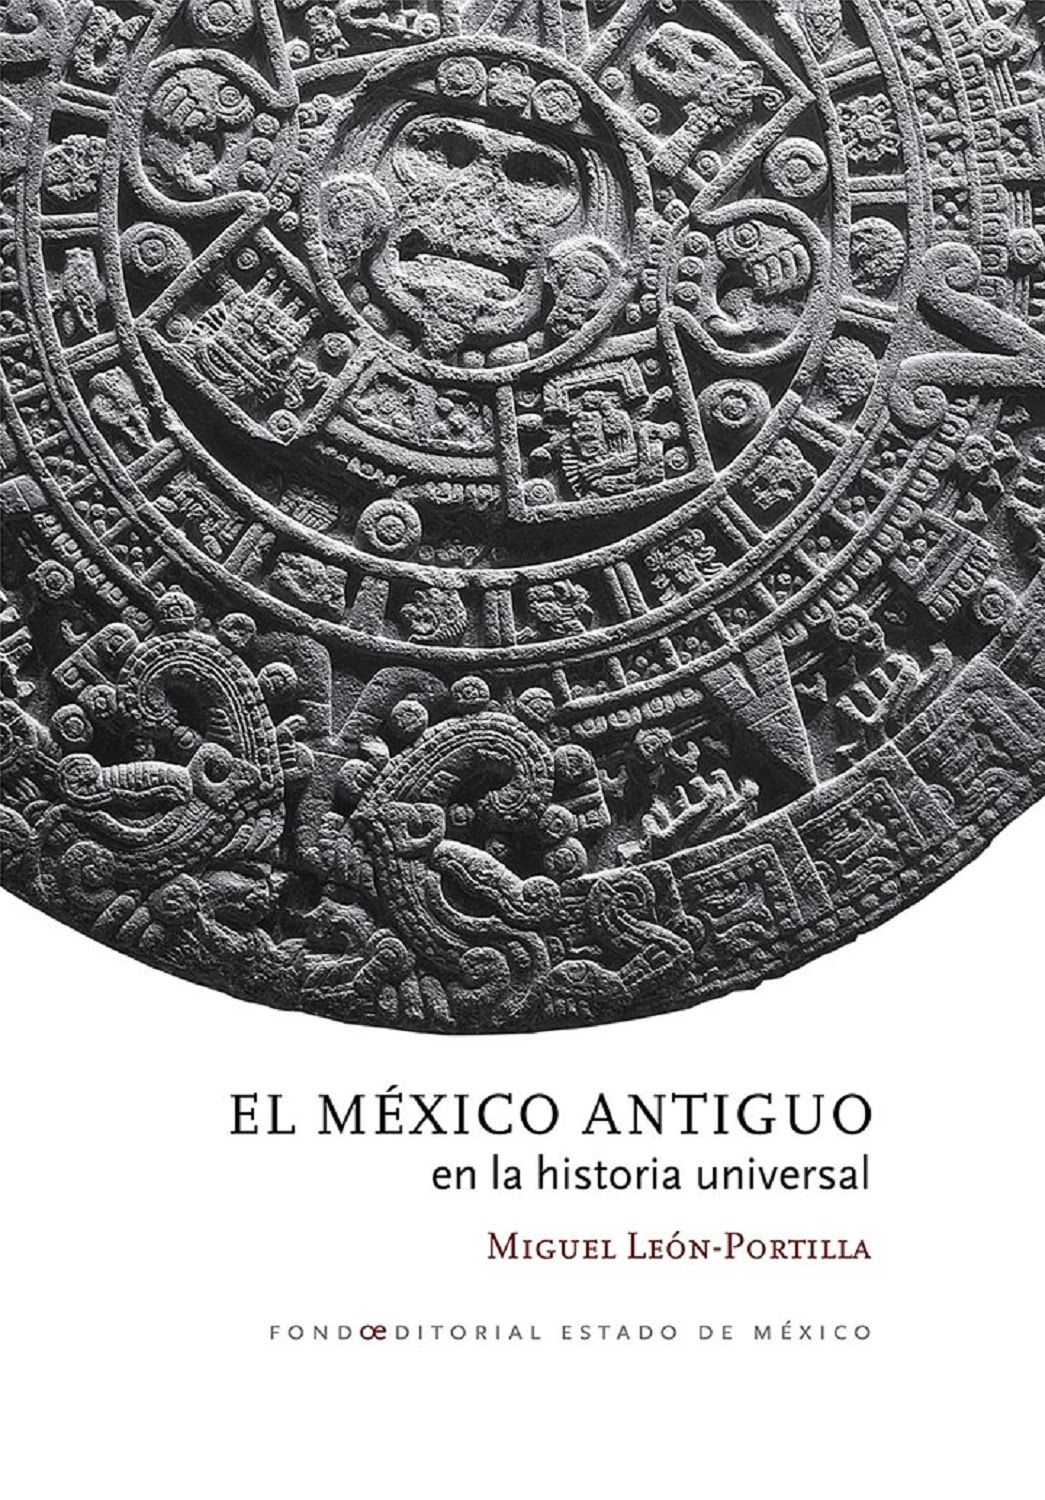 “El México antiguo en la historia universal", de Miguel León-Portilla, disponible para consulta digital